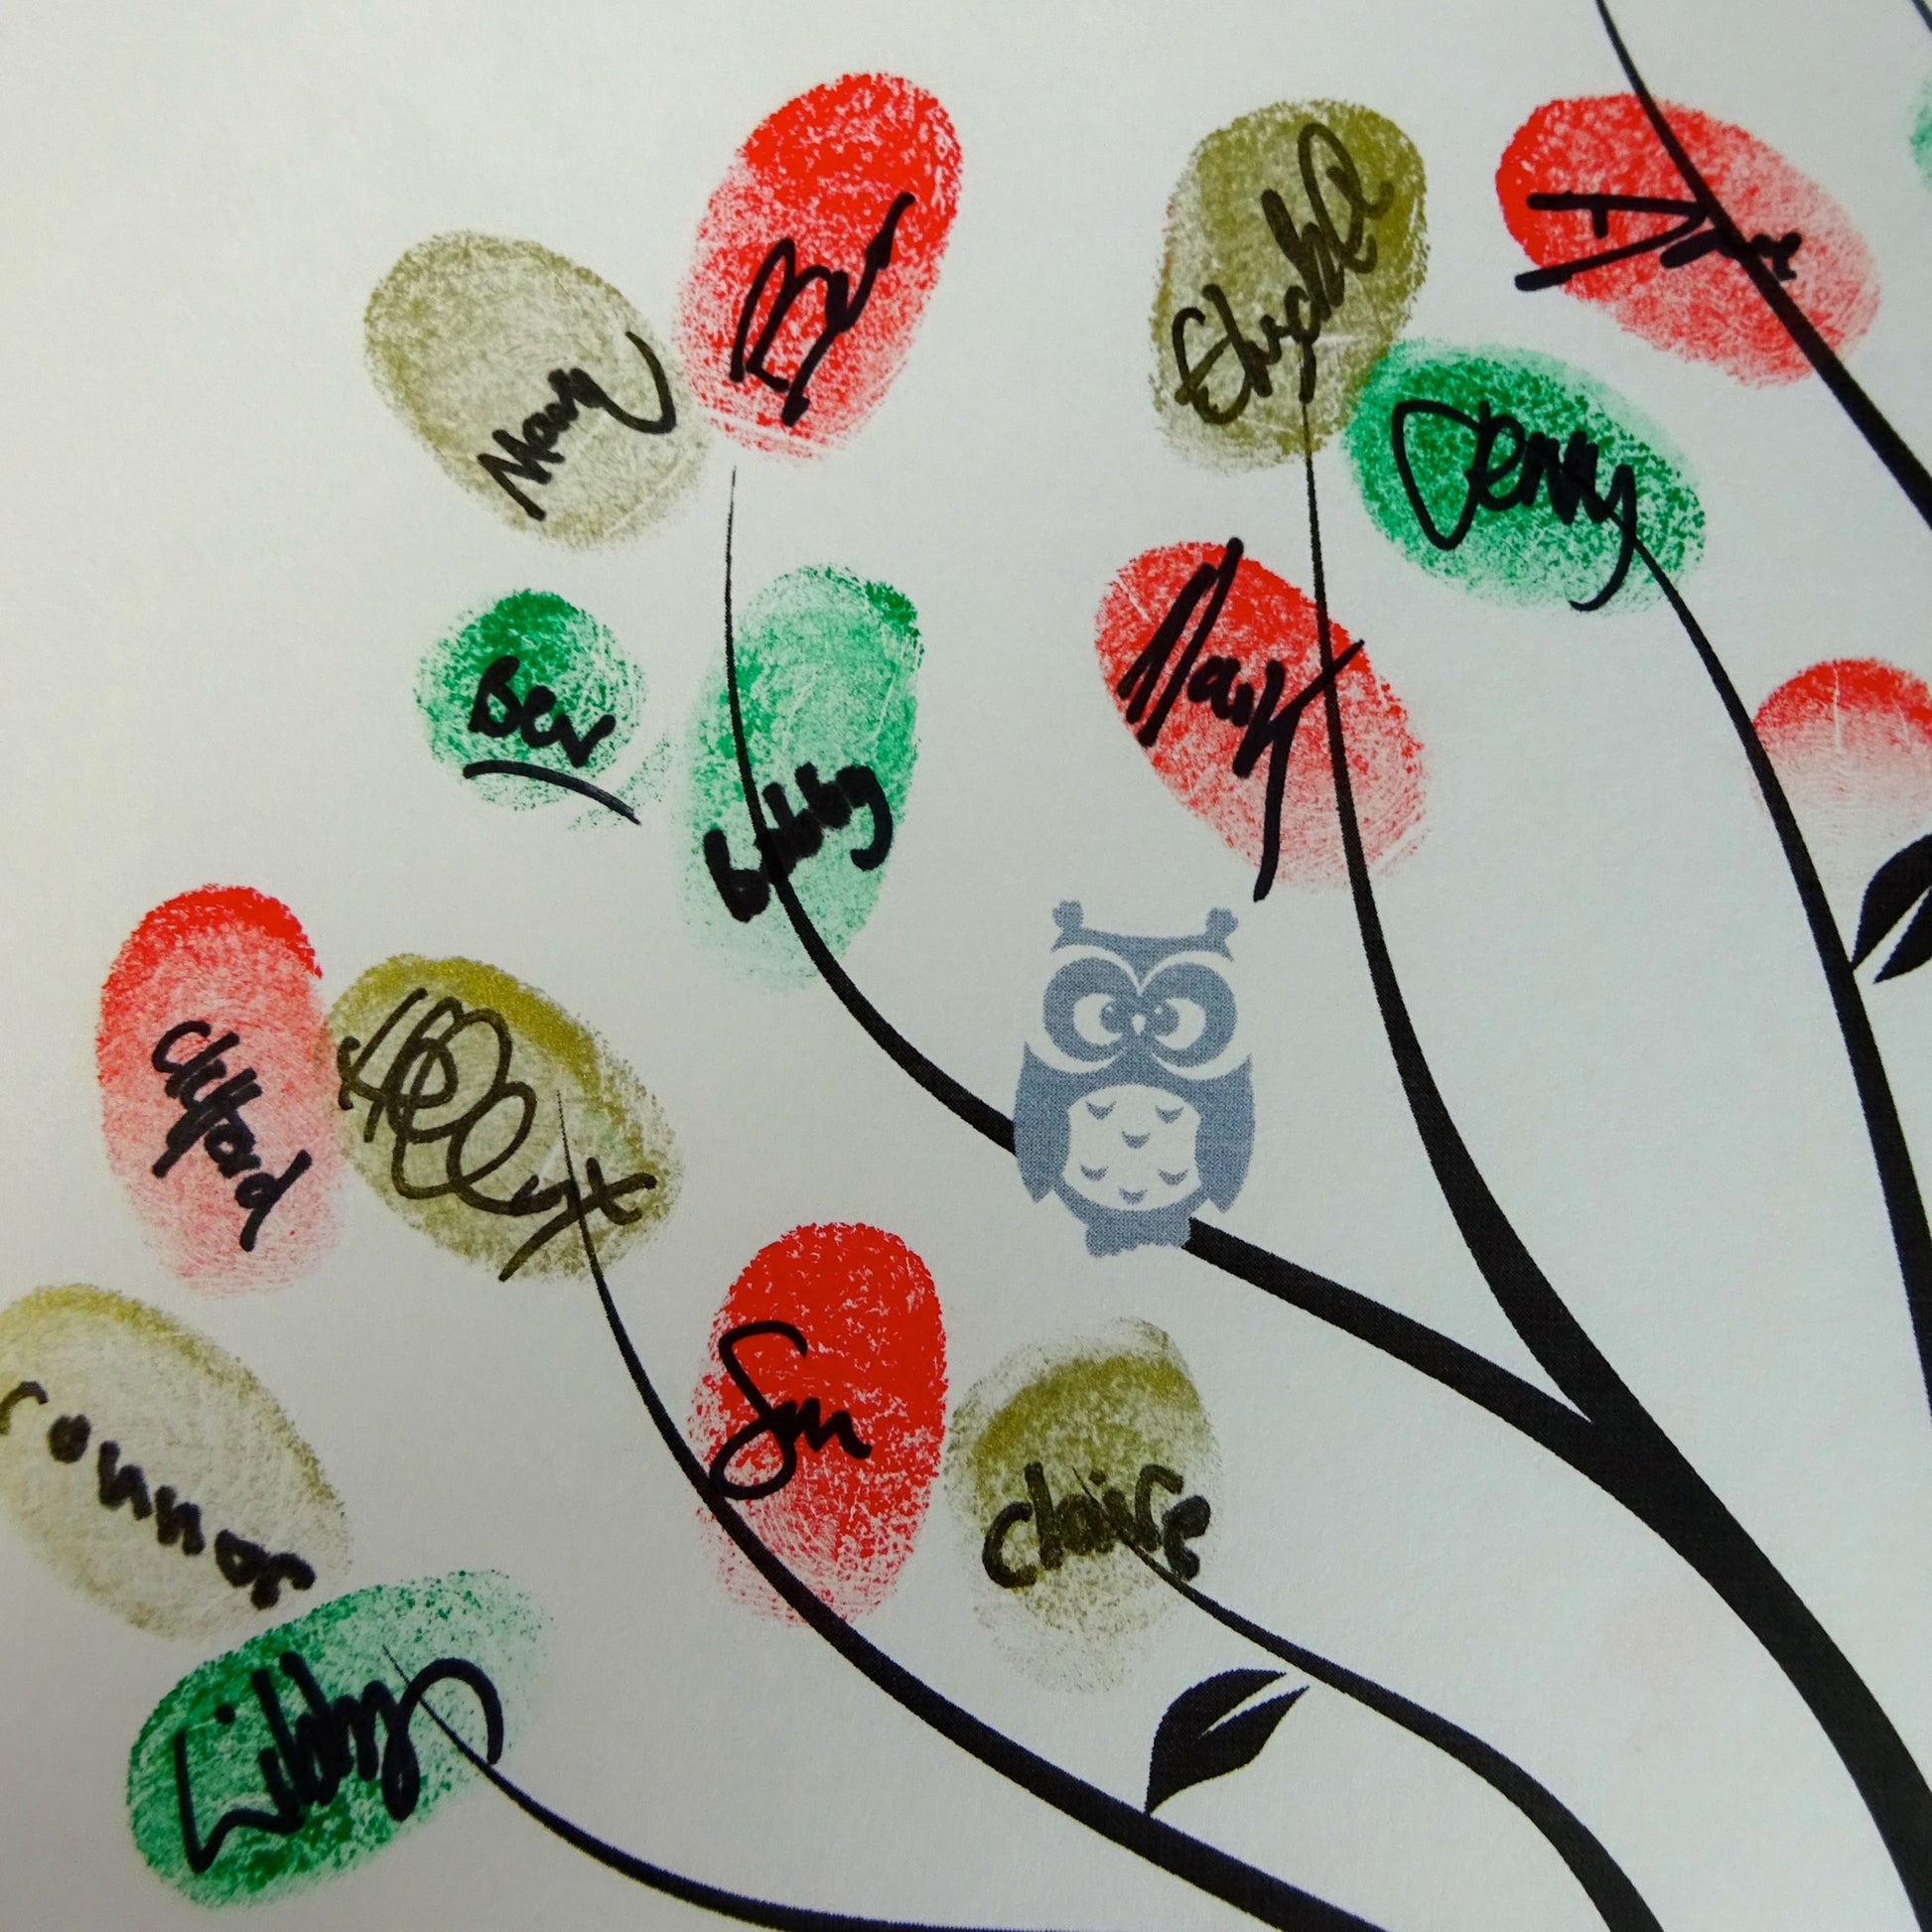 Fingerprint tree / multicolour fingerprint leaves, grey owl